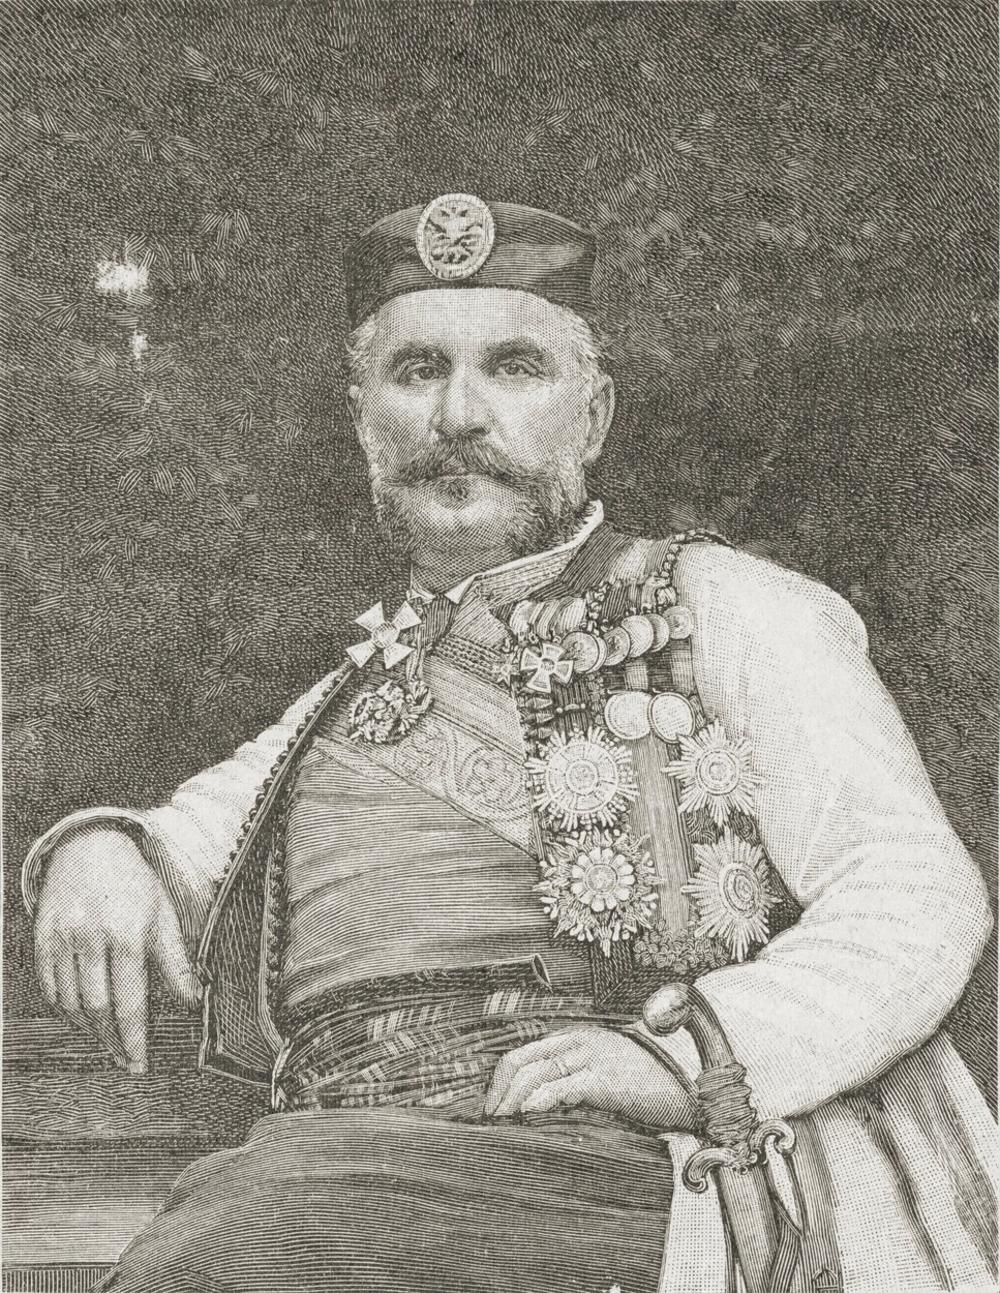 knjaz Nikola, kralj Nikola, kralj Nikola I Petrović, Nikola I Petrović, crnogorski kralj, crnogorski knjaz, kralj Nikola I